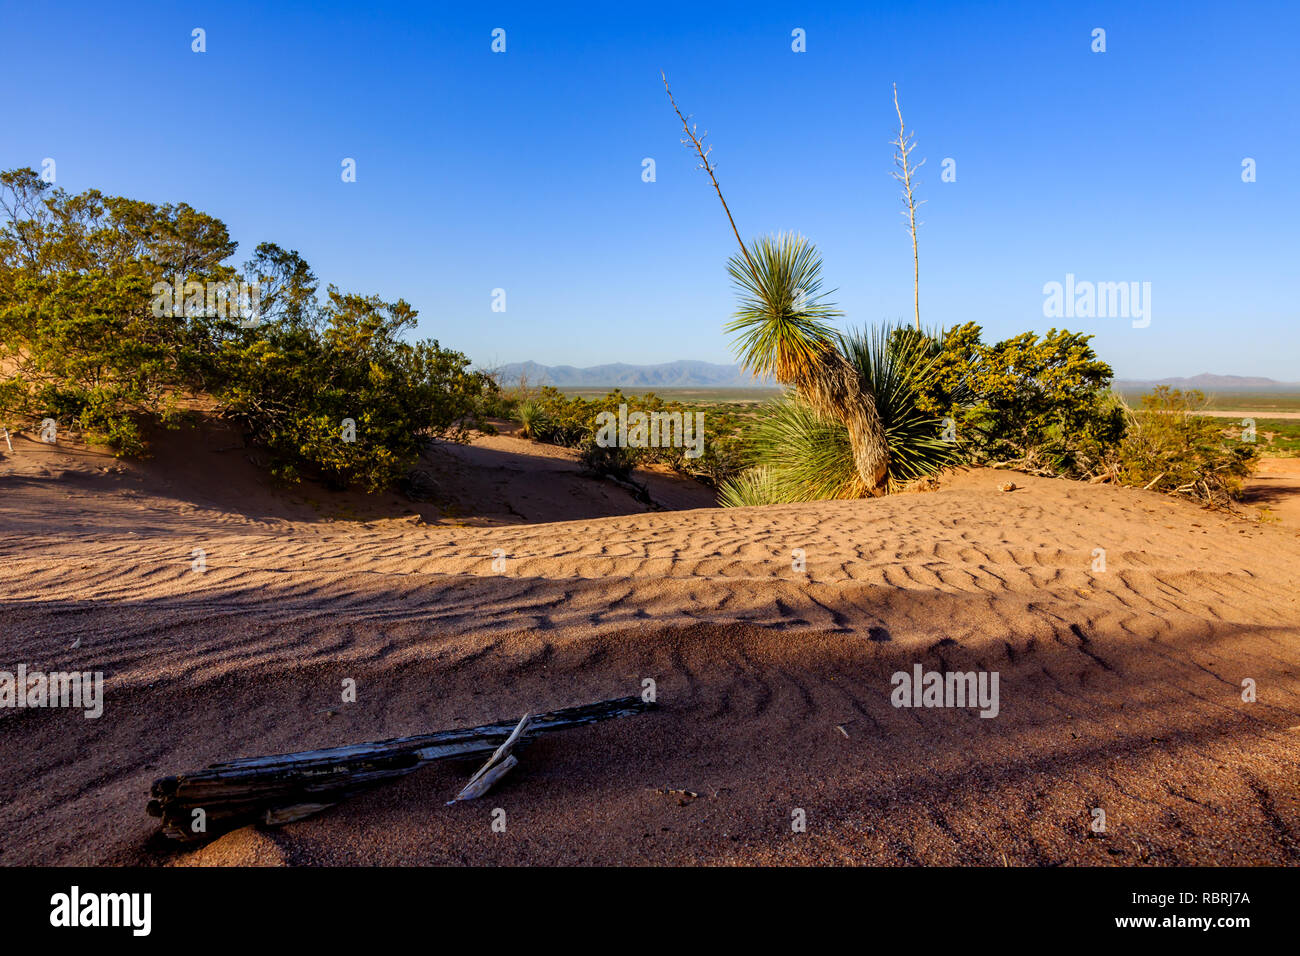 Ben caldo skyprovide dune del deserto unica habitat e opportunità di svago. Southern Arizona. Foto Stock